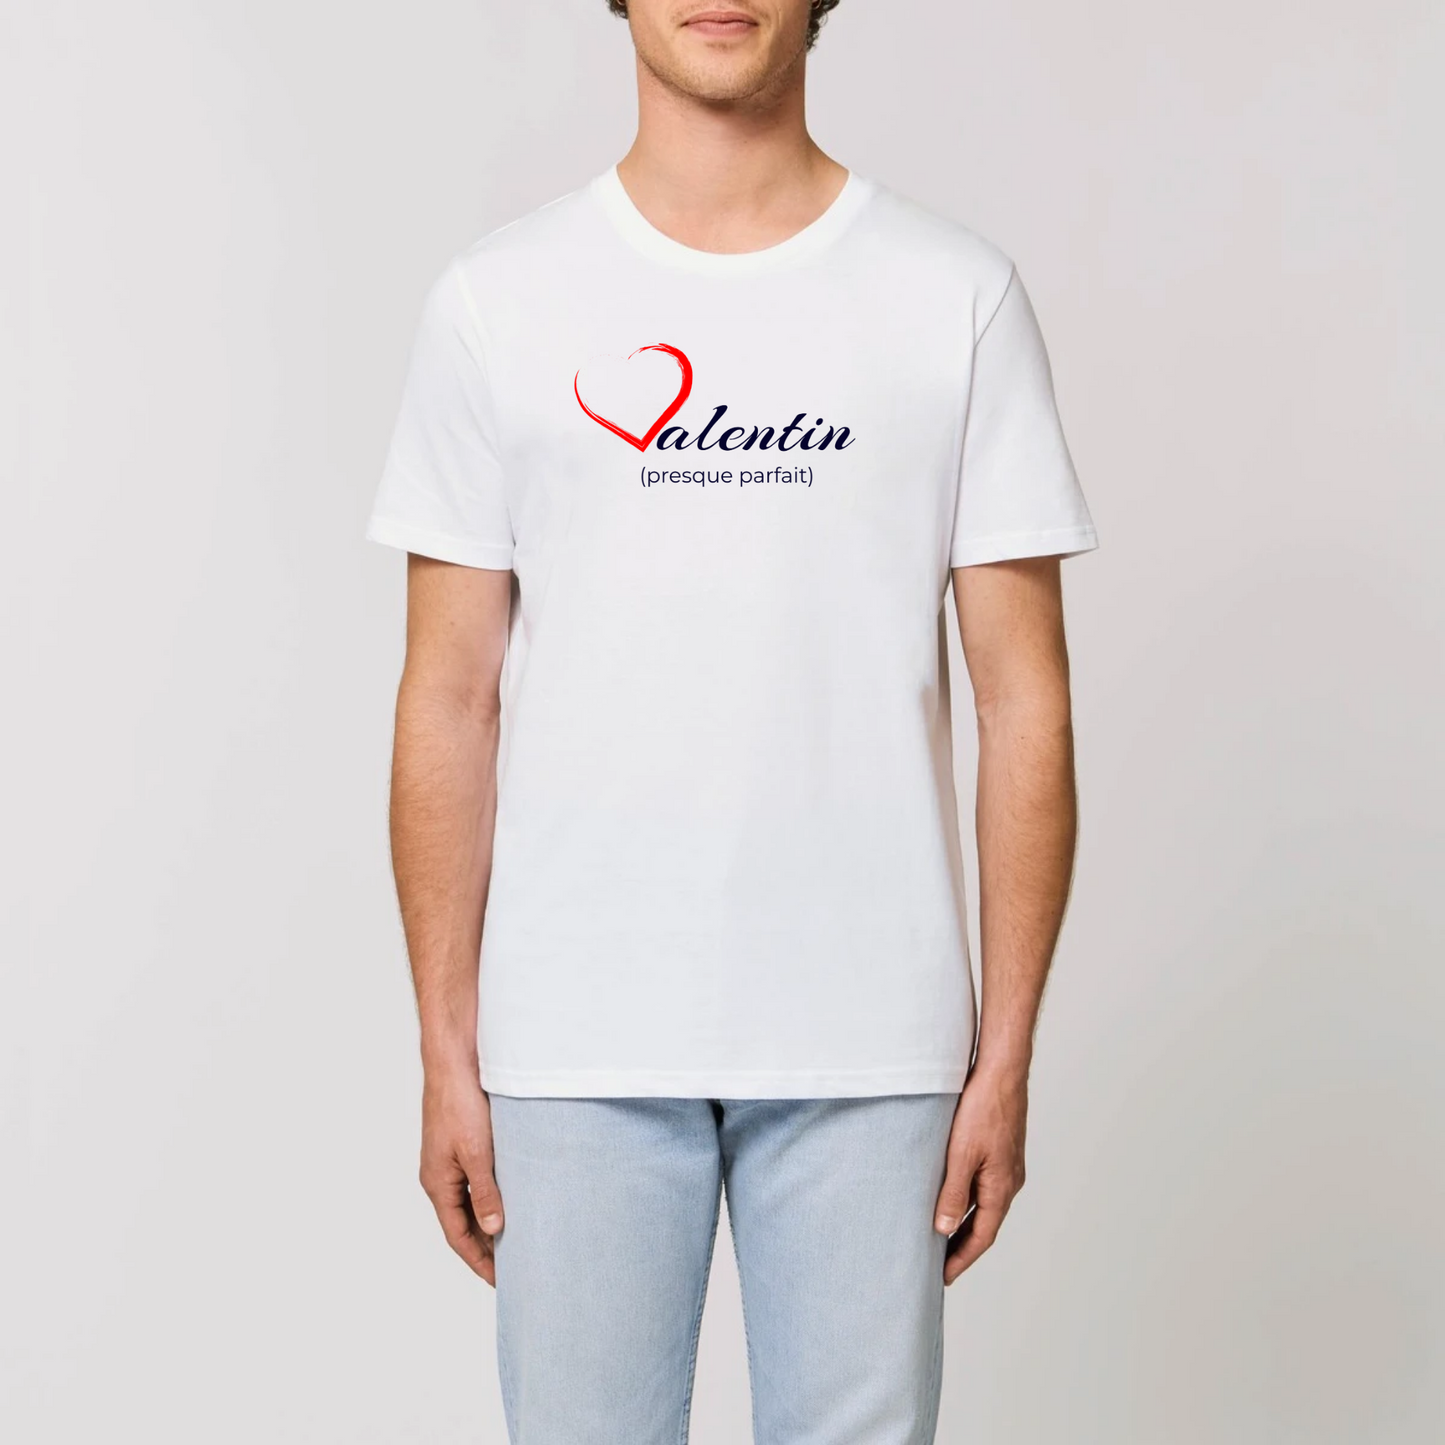 t-shirt homme Valentin coton bio T-French, tee shirt homme, saint valentin, idée cadeau, biologique, éco-responsable, Blanc